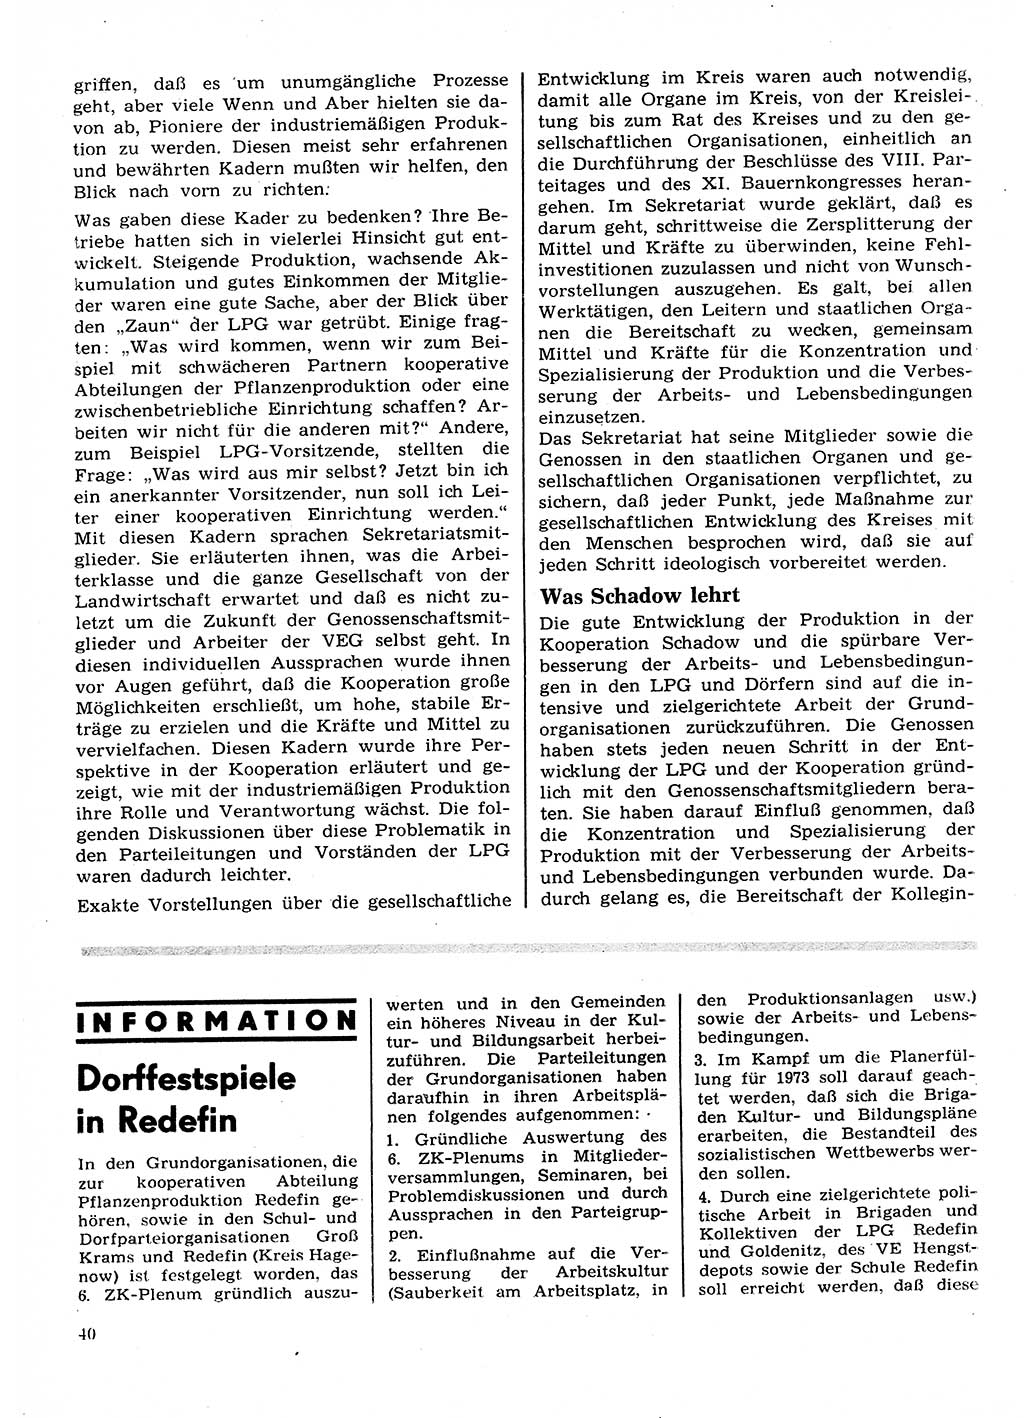 Neuer Weg (NW), Organ des Zentralkomitees (ZK) der SED (Sozialistische Einheitspartei Deutschlands) für Fragen des Parteilebens, 28. Jahrgang [Deutsche Demokratische Republik (DDR)] 1973, Seite 40 (NW ZK SED DDR 1973, S. 40)